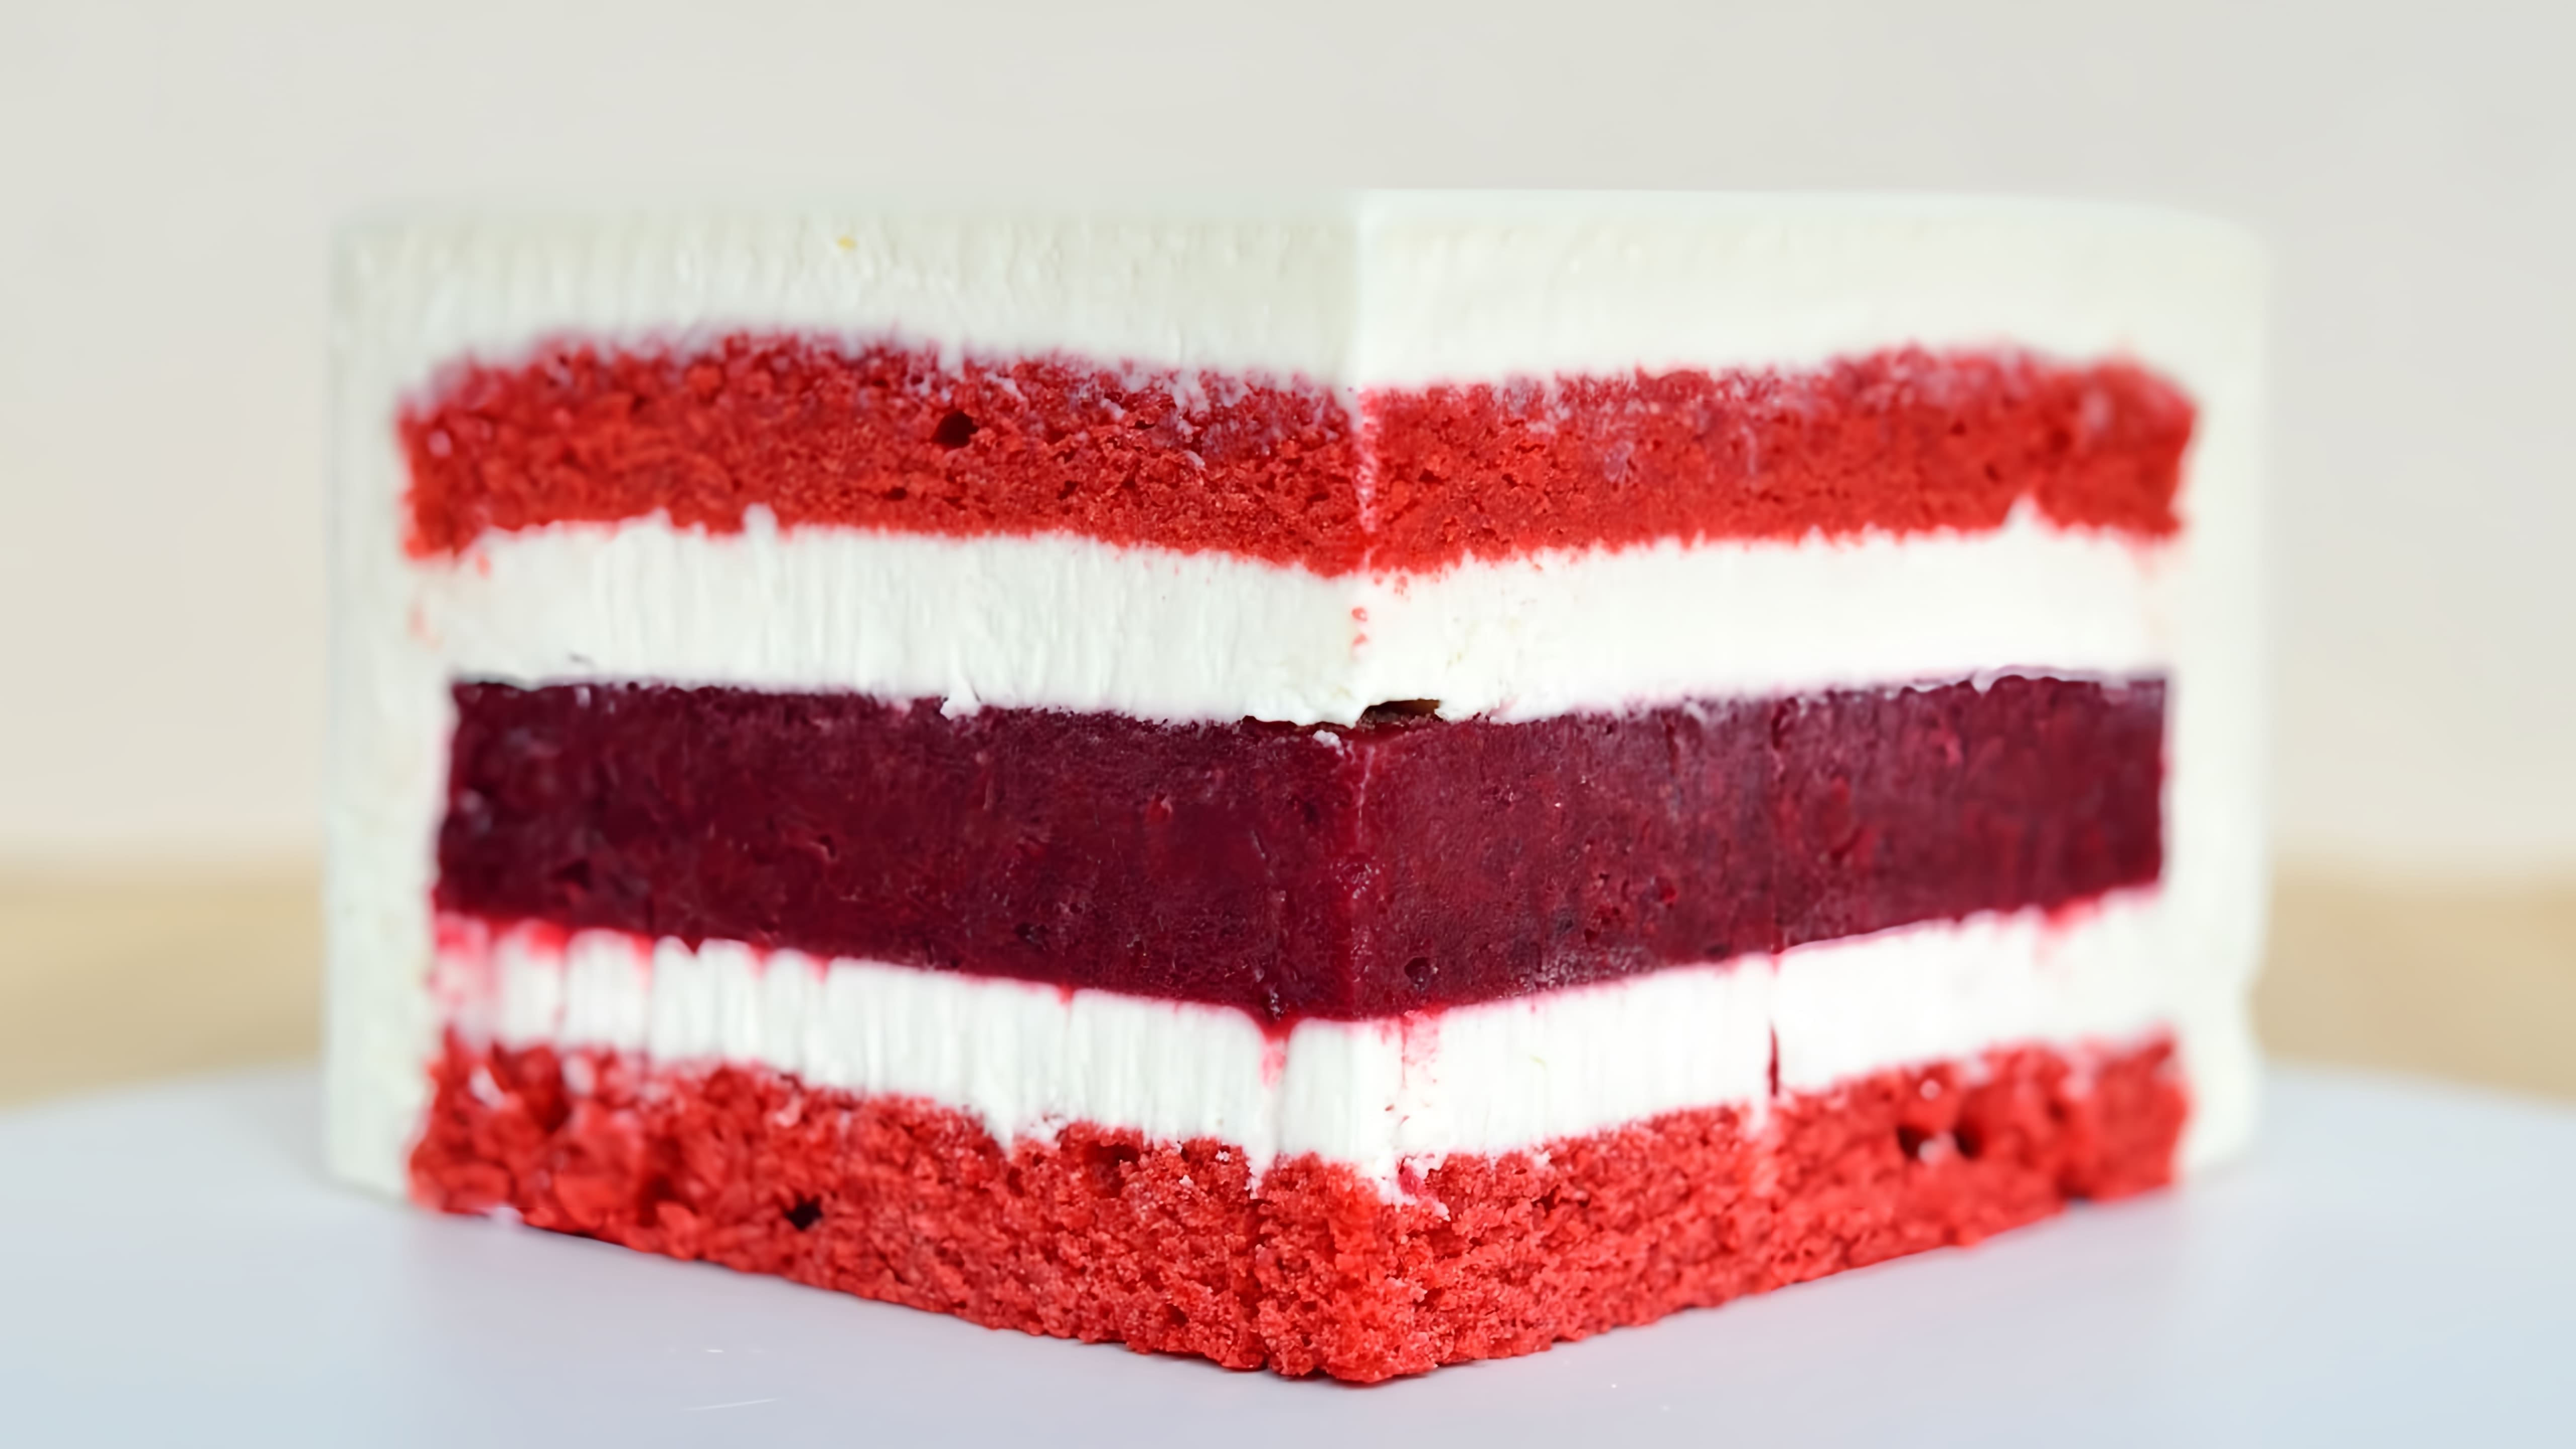 В этом видео демонстрируется процесс приготовления муссового торта "Красный бархат" с зеркальной глазурью